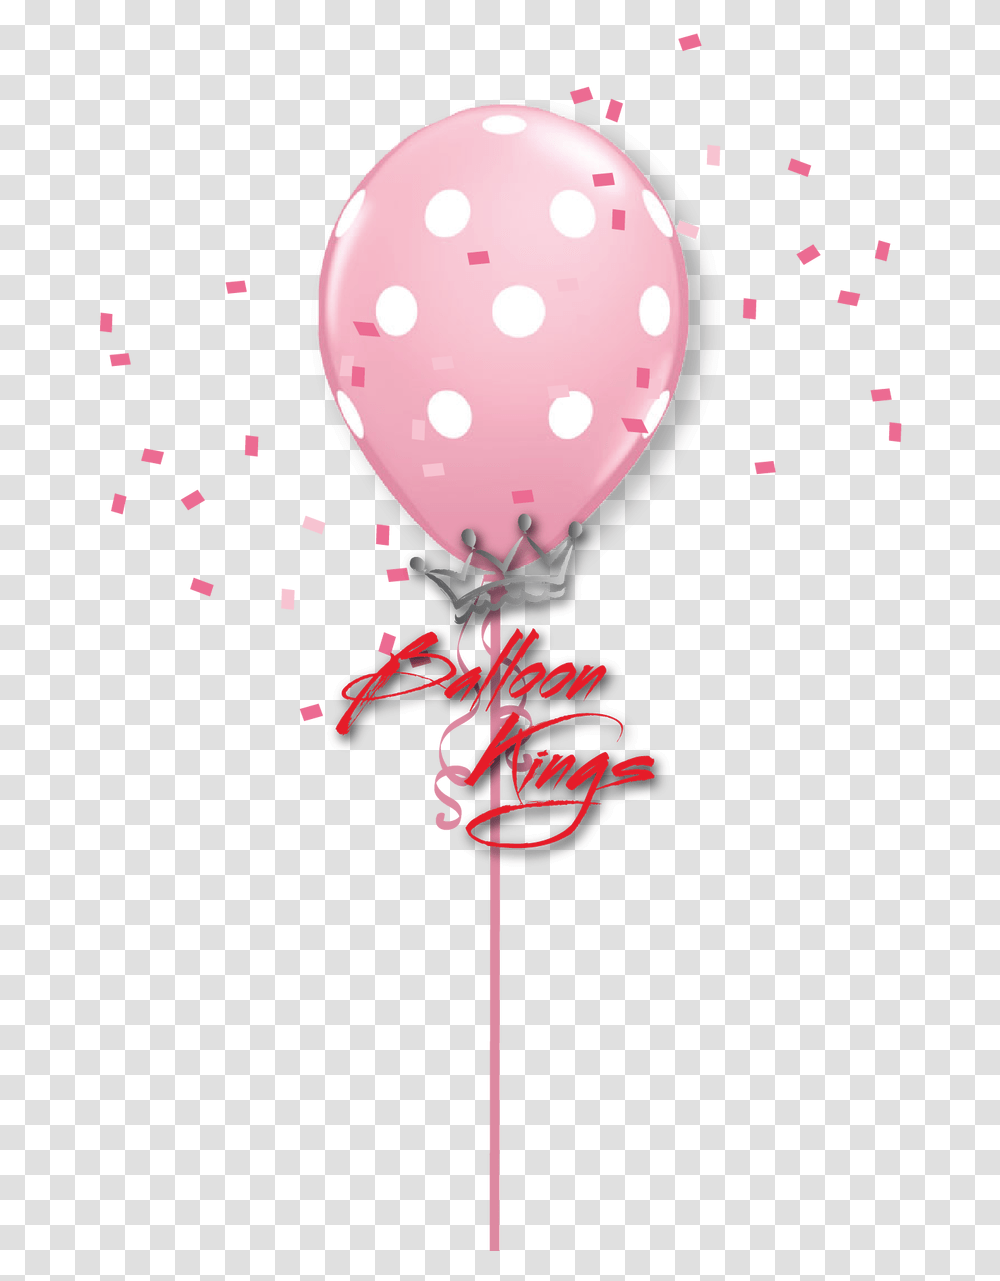 Number 10 Polka Dots Polka Dot, Ball, Balloon, Paper Transparent Png